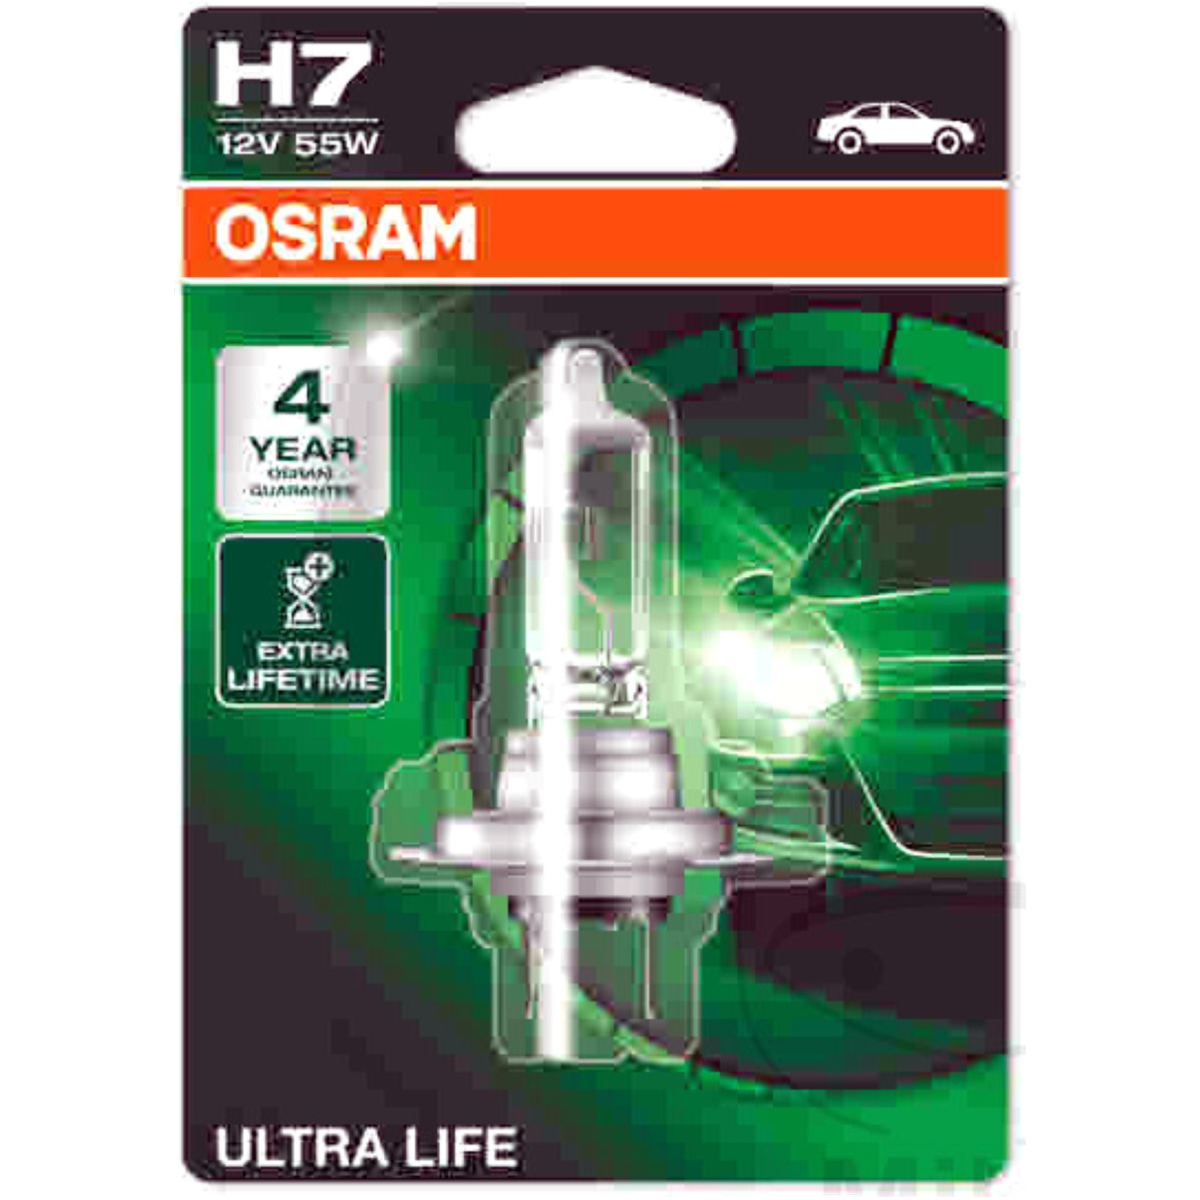 Osram 64210ult-01b lampe h7 12v55w 1er blister von OSRAM